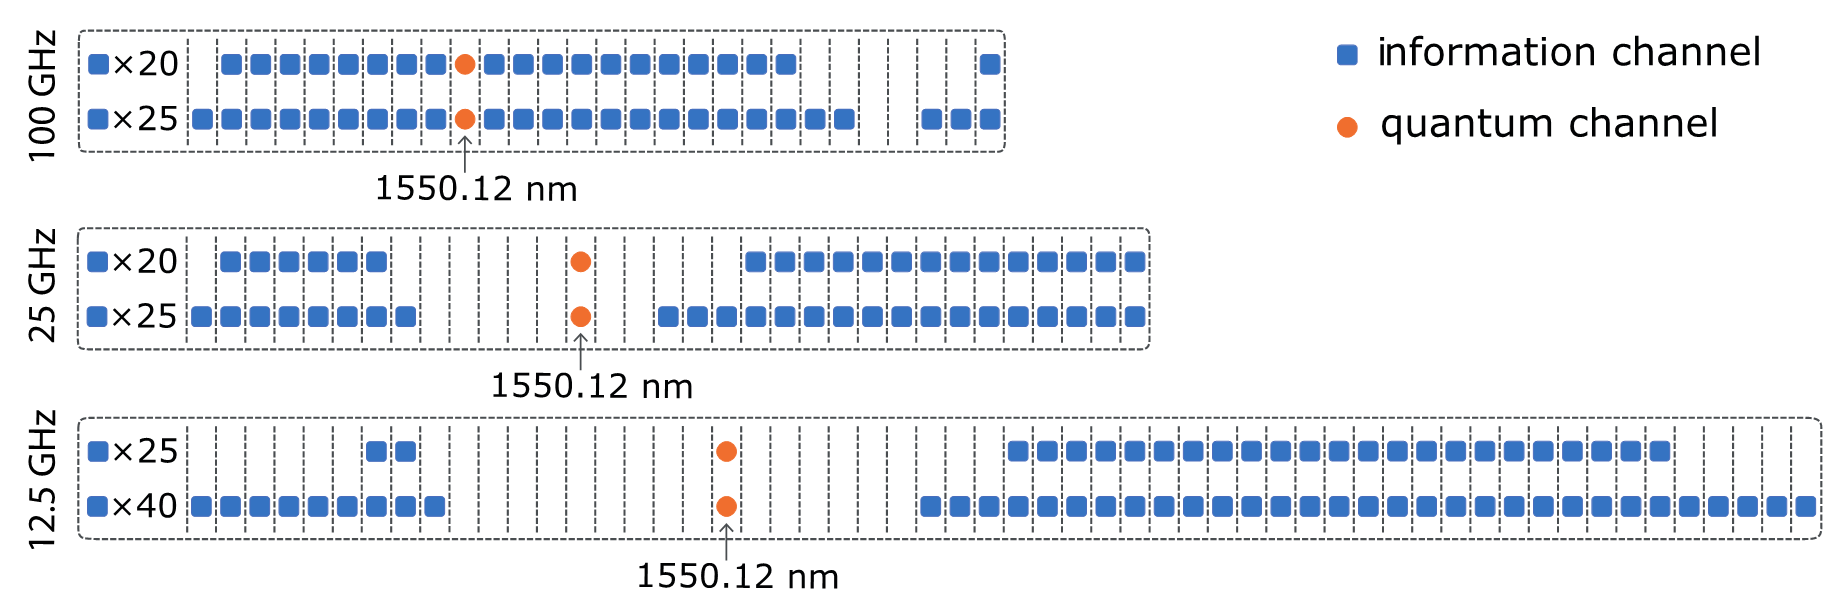 Рисунок 4 – Примеры оптимальных расположений квантового и информационных каналов в различных частотных сетках, полученные с помощью алгоритма имитации отжига.